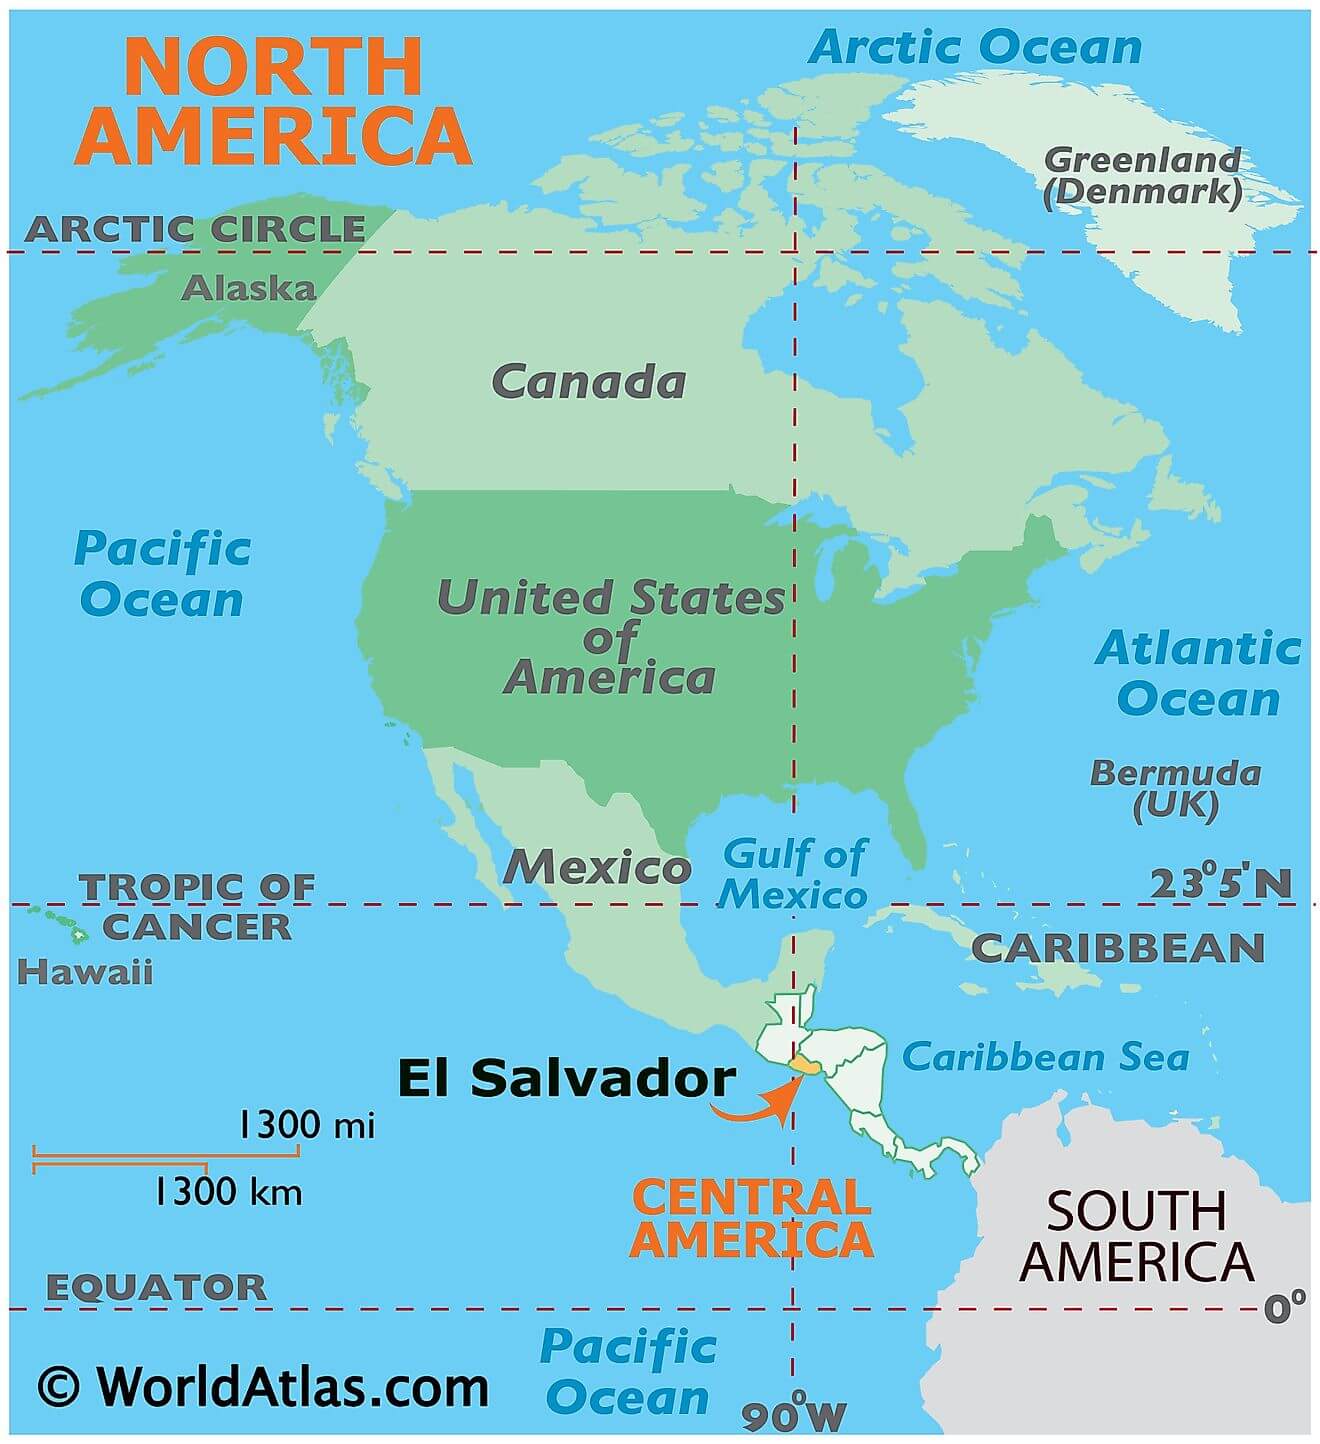 El Salvador ở đâu?